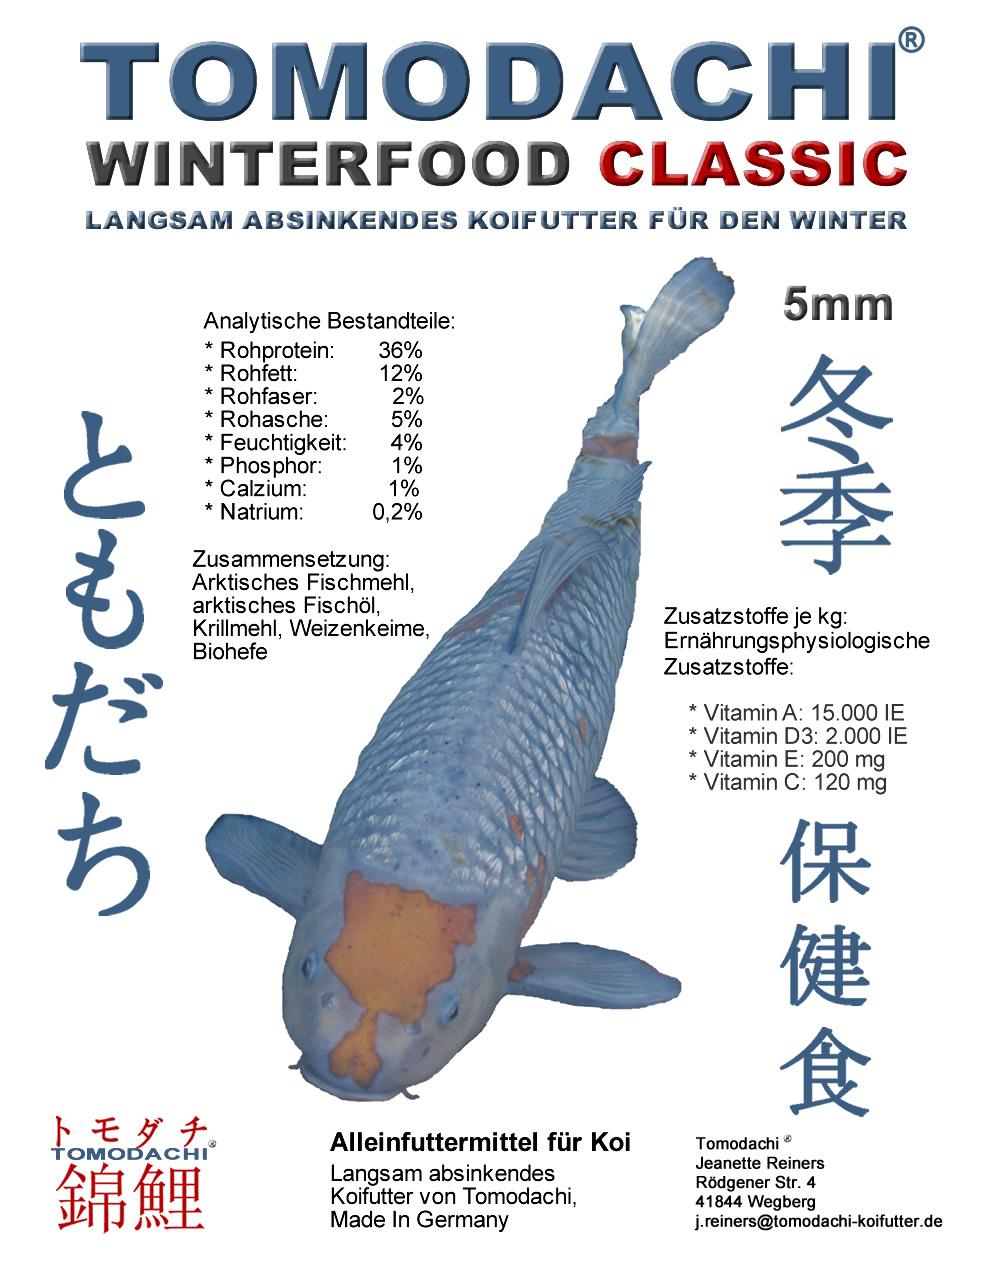 Winterfutter für Koi - Tomodachi Winterfood Classic - das langsam absinkende Koifutter, klassisches Winterfutter für Koi mit wertvollen arktischen Rohstoffen für gesunde und vitale Koi im Winter.